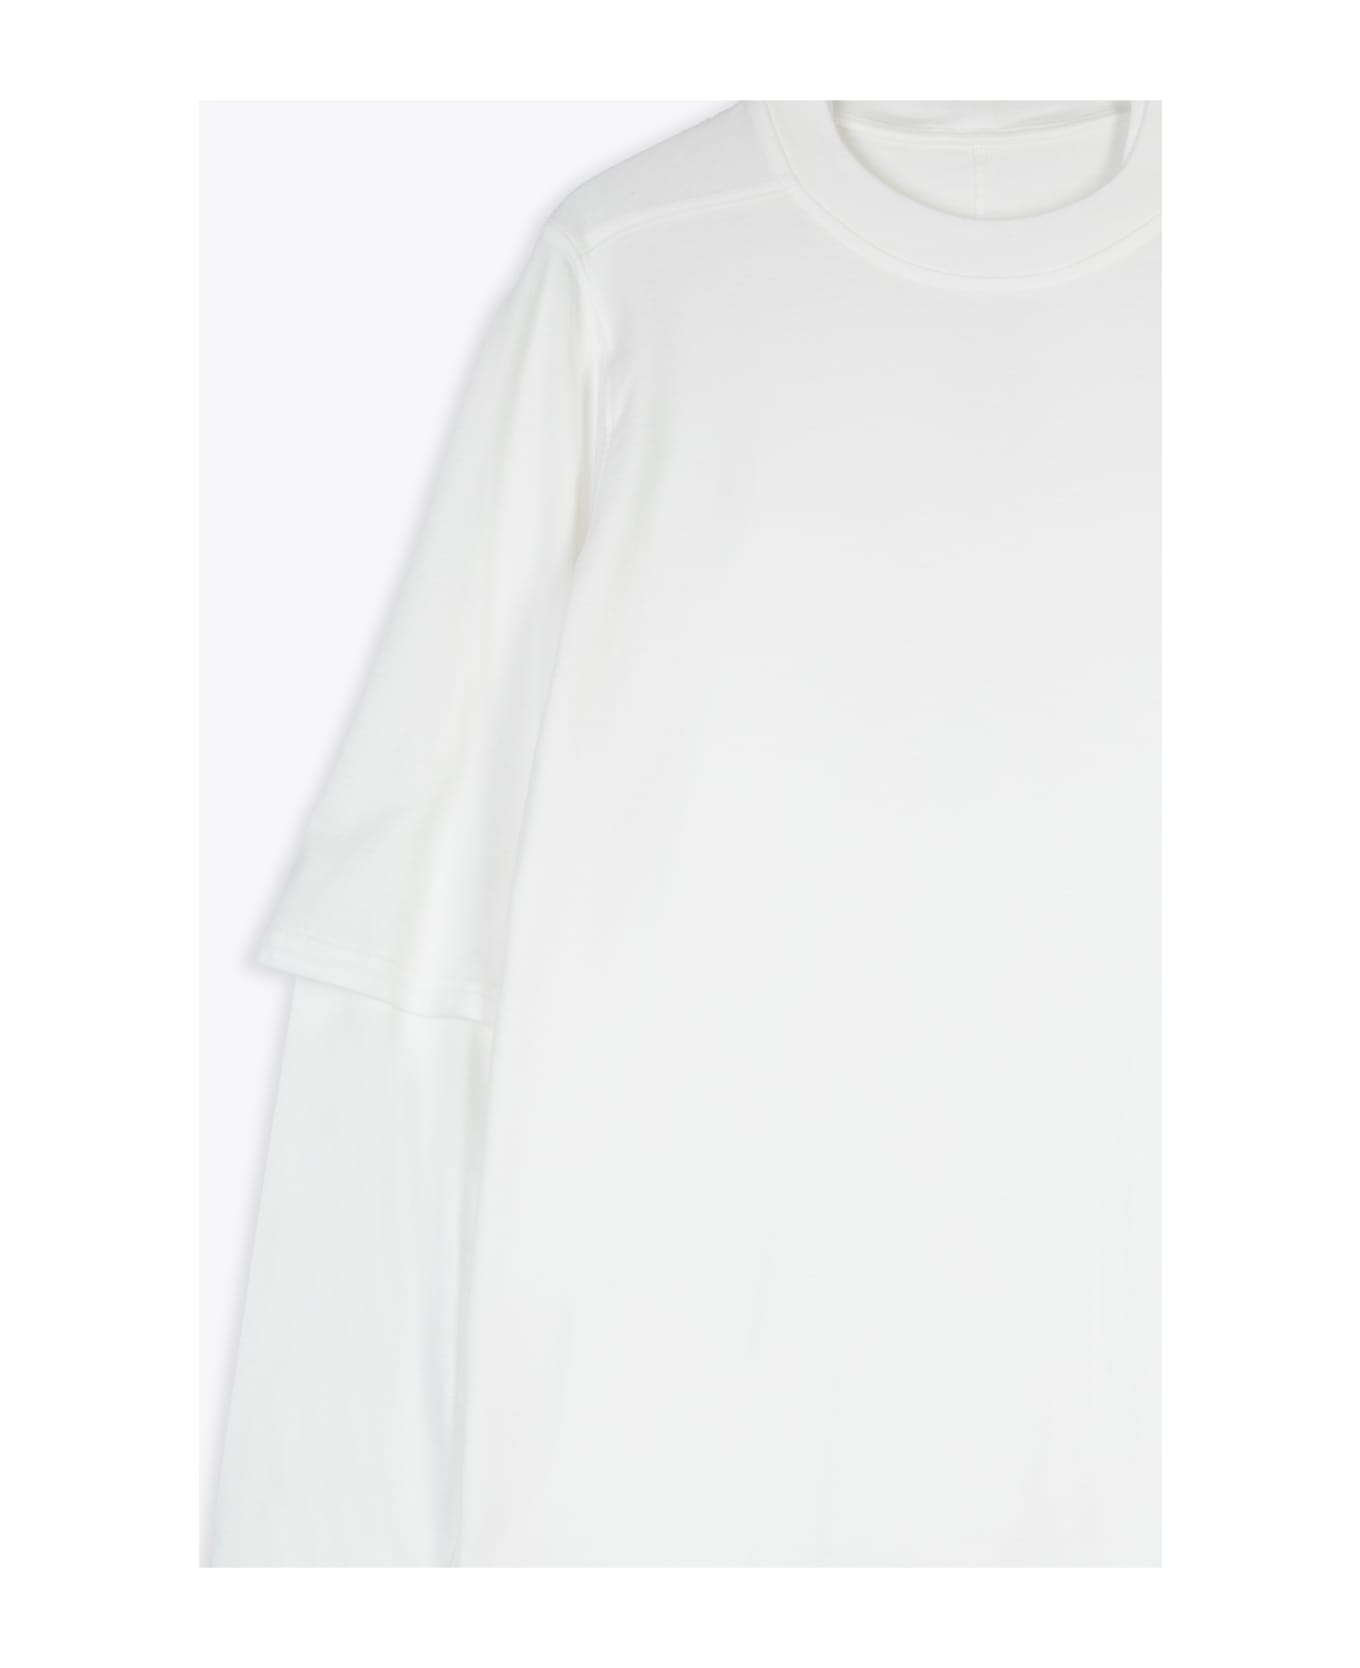 DRKSHDW Hustler T White Cotton Layered T-shirt With Long Sleeves - Hustler T - Latte シャツ